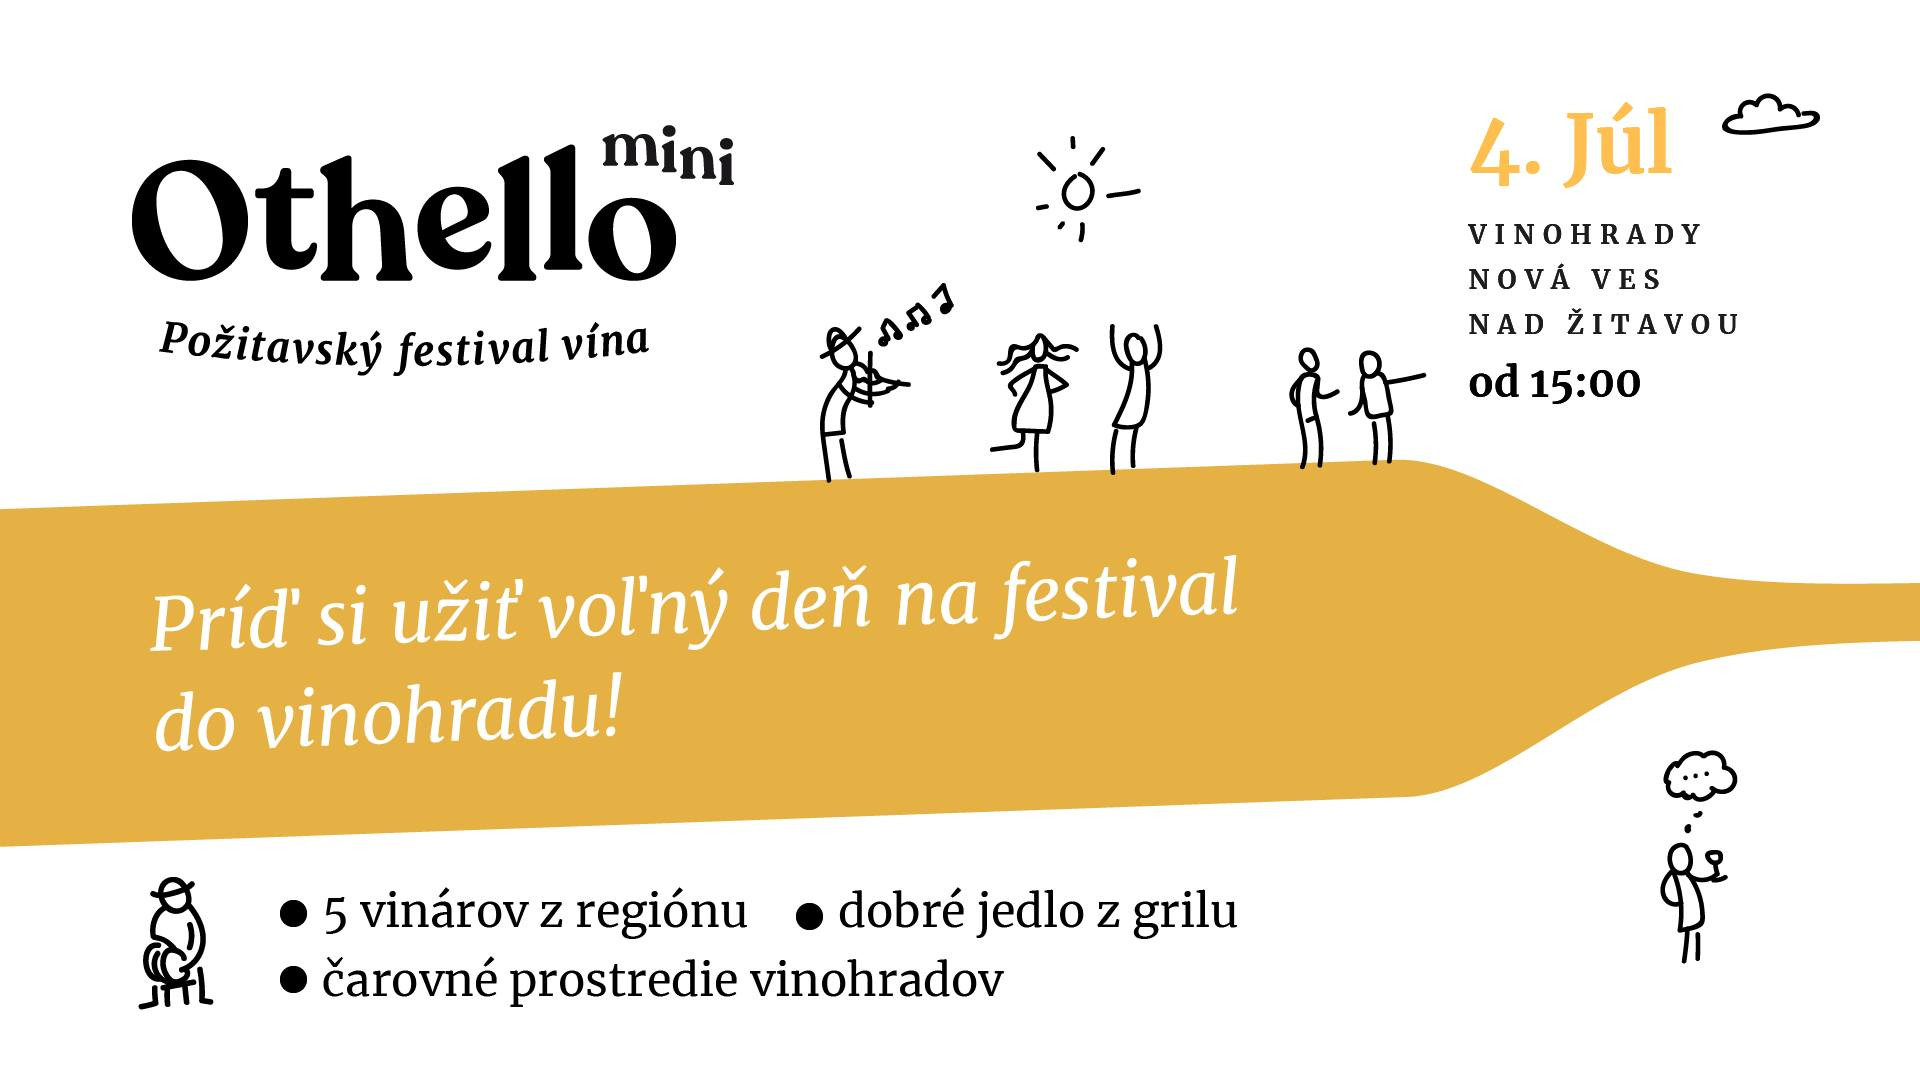 Othello mini - Požitavský festival vína